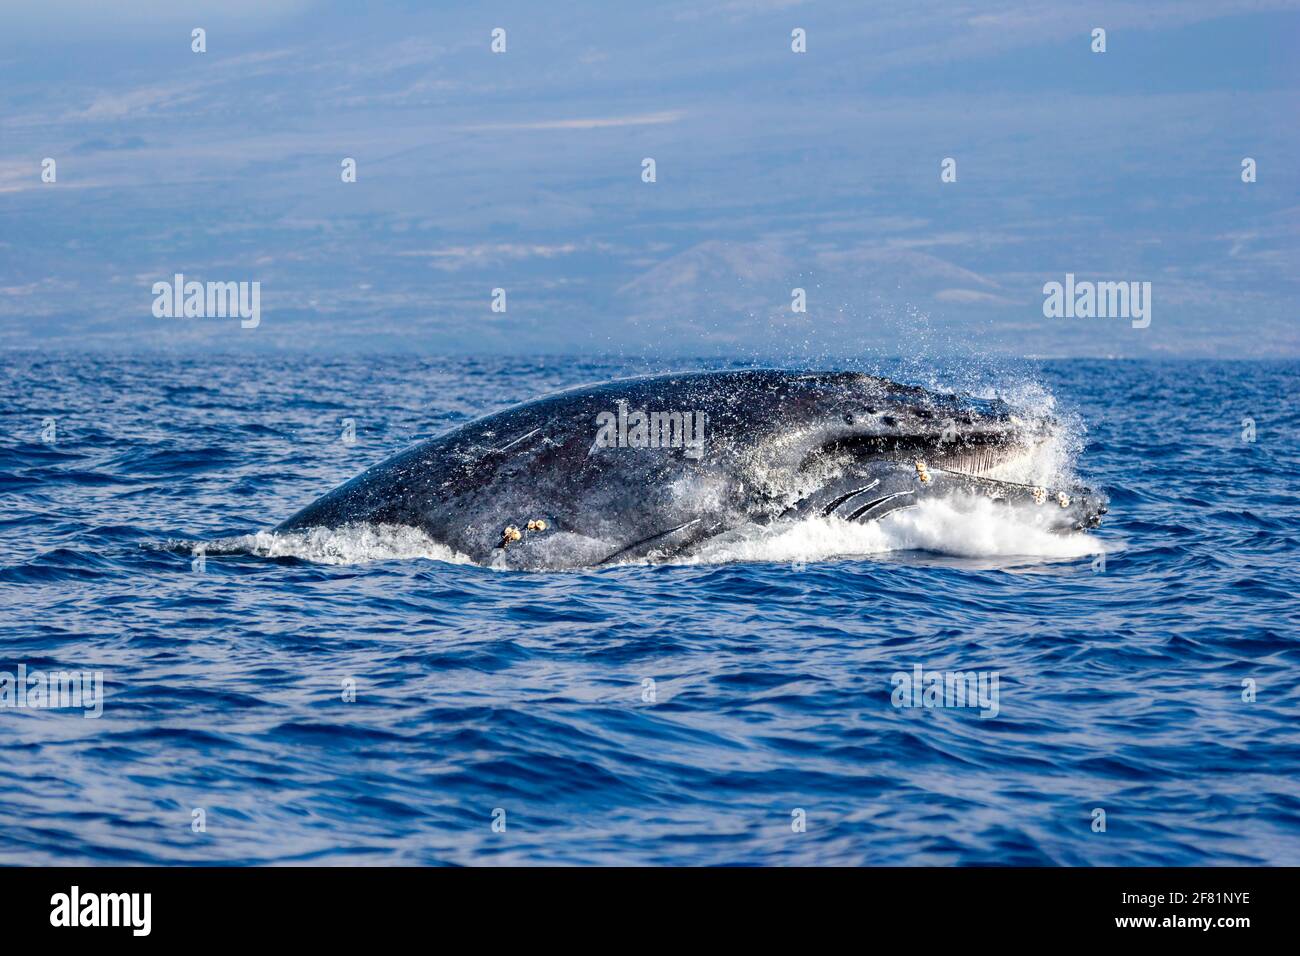 Cette baleine à bosse braconneuse, Megaptera novaeangliae, se lança à plusieurs reprises hors de l'océan et à chaque fois qu'elle ouvrait sa bouche lorsqu'elle touchait la surface Banque D'Images